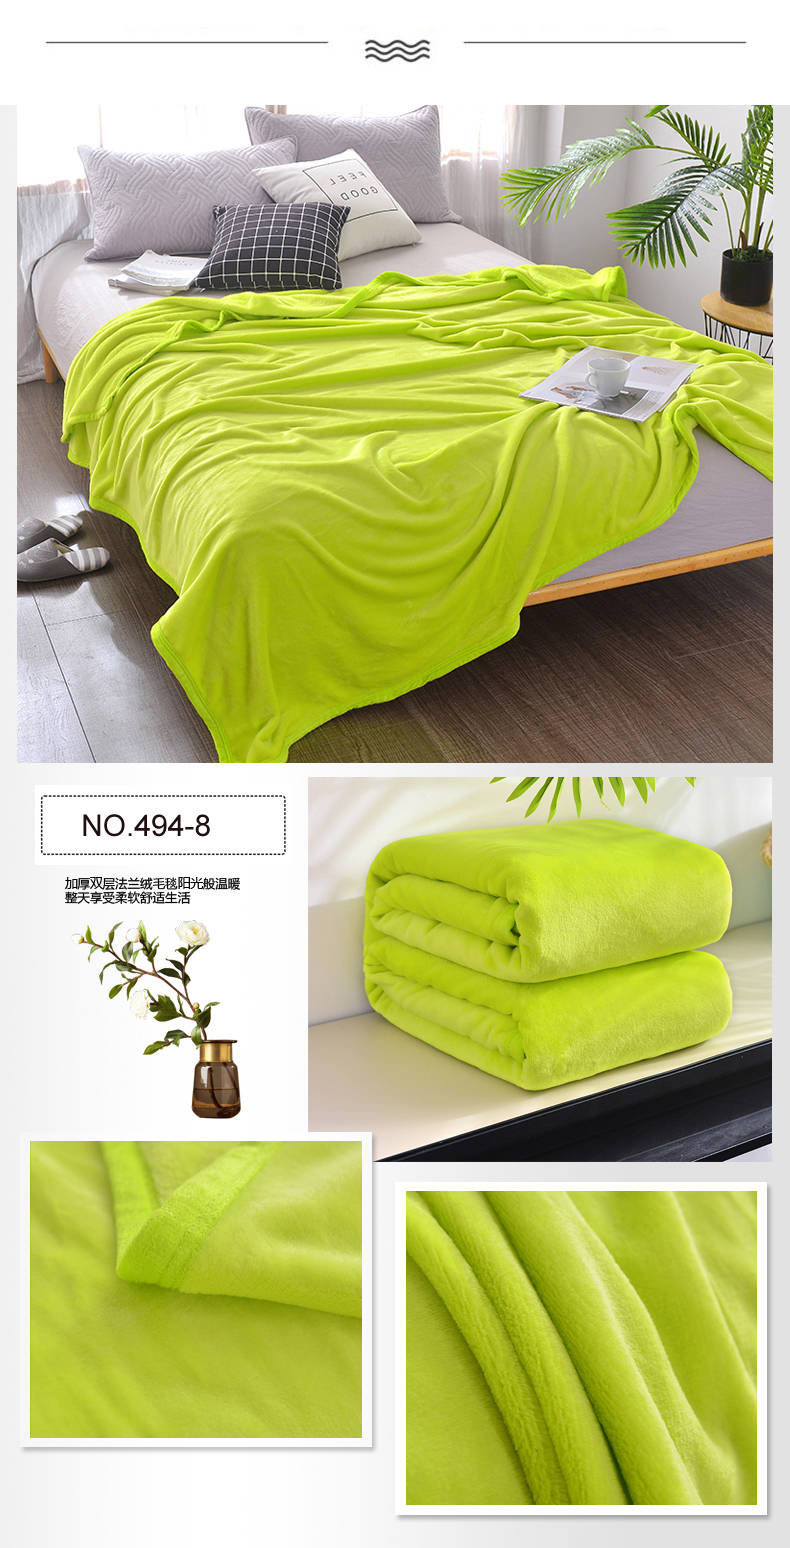 Super Soft Polyester Blanket For King Bed